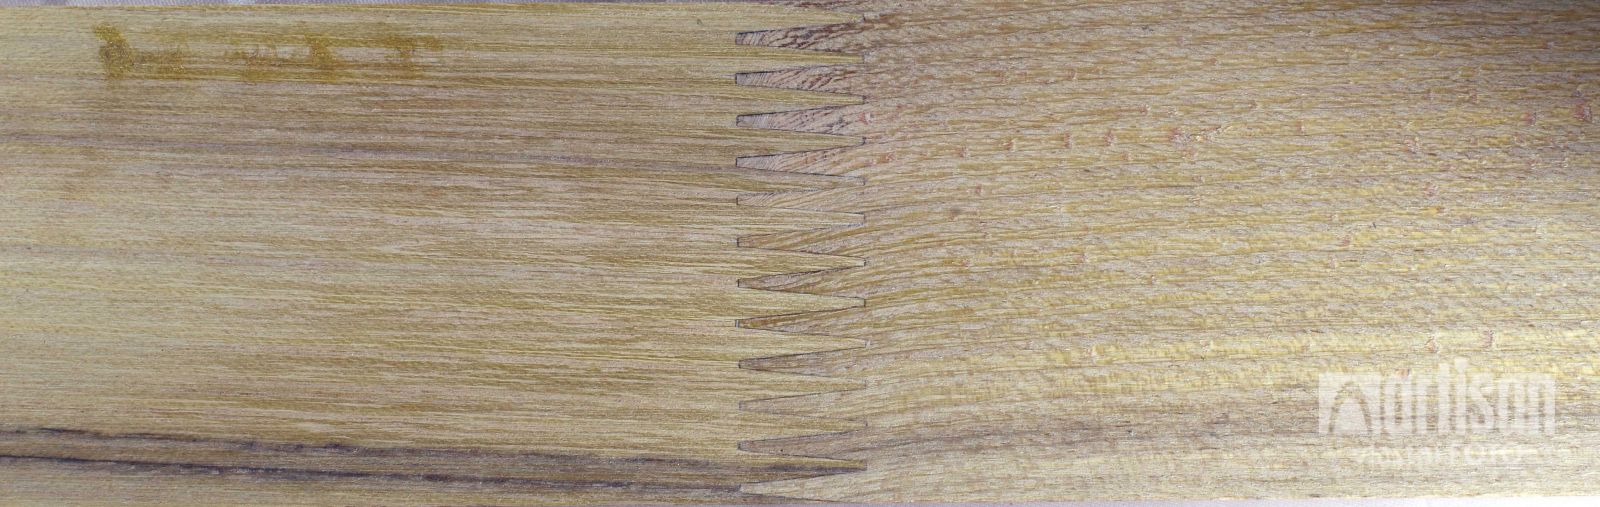 Podkladový dřevěný hranol z akátu - cinkový spoj